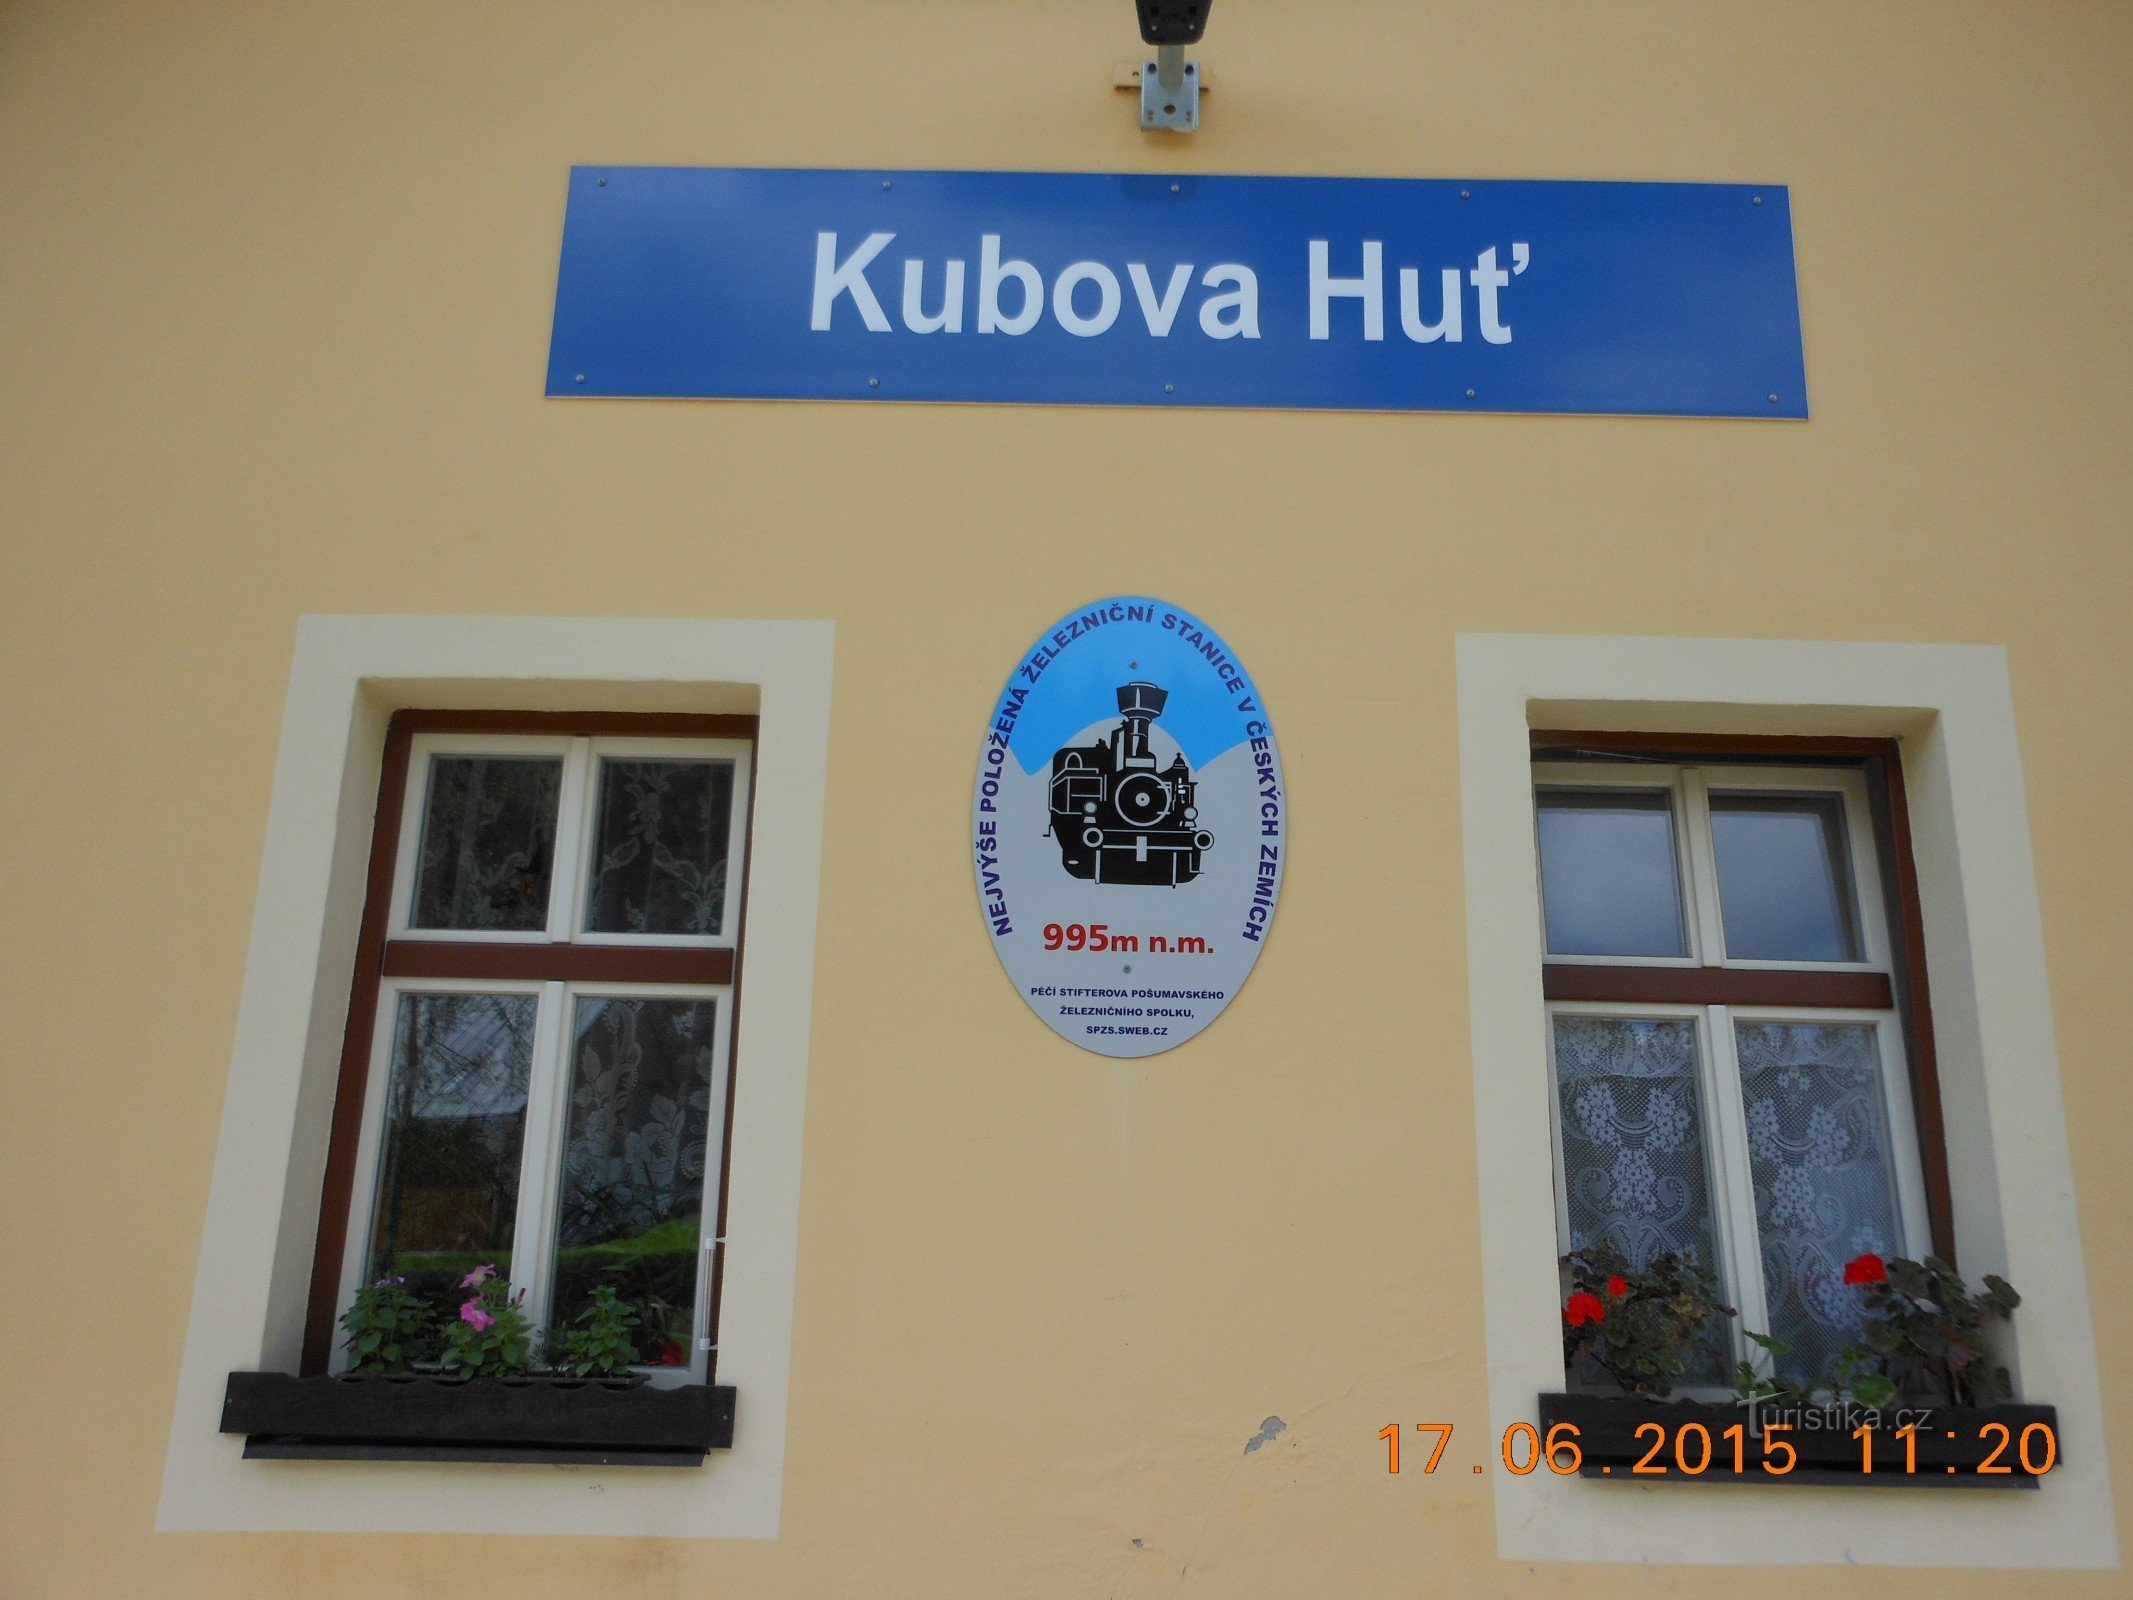 Kubova Huť - a estação ferroviária mais alta da Boêmia